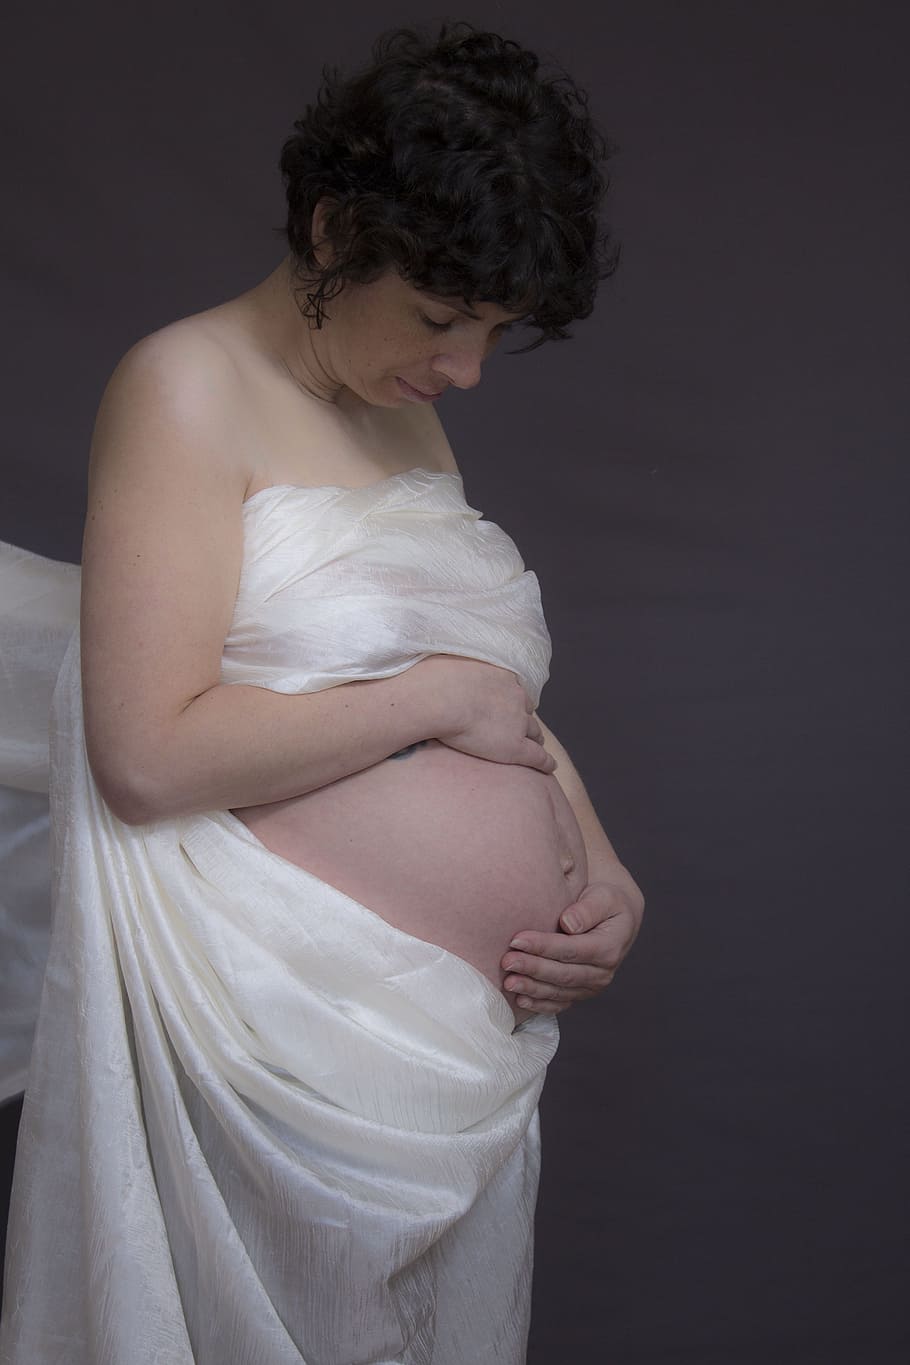 Wanita, Kehamilan, Perut, Pembicara, wanita hamil, bersalin, hamil, Perut manusia, ibu, antisipasi